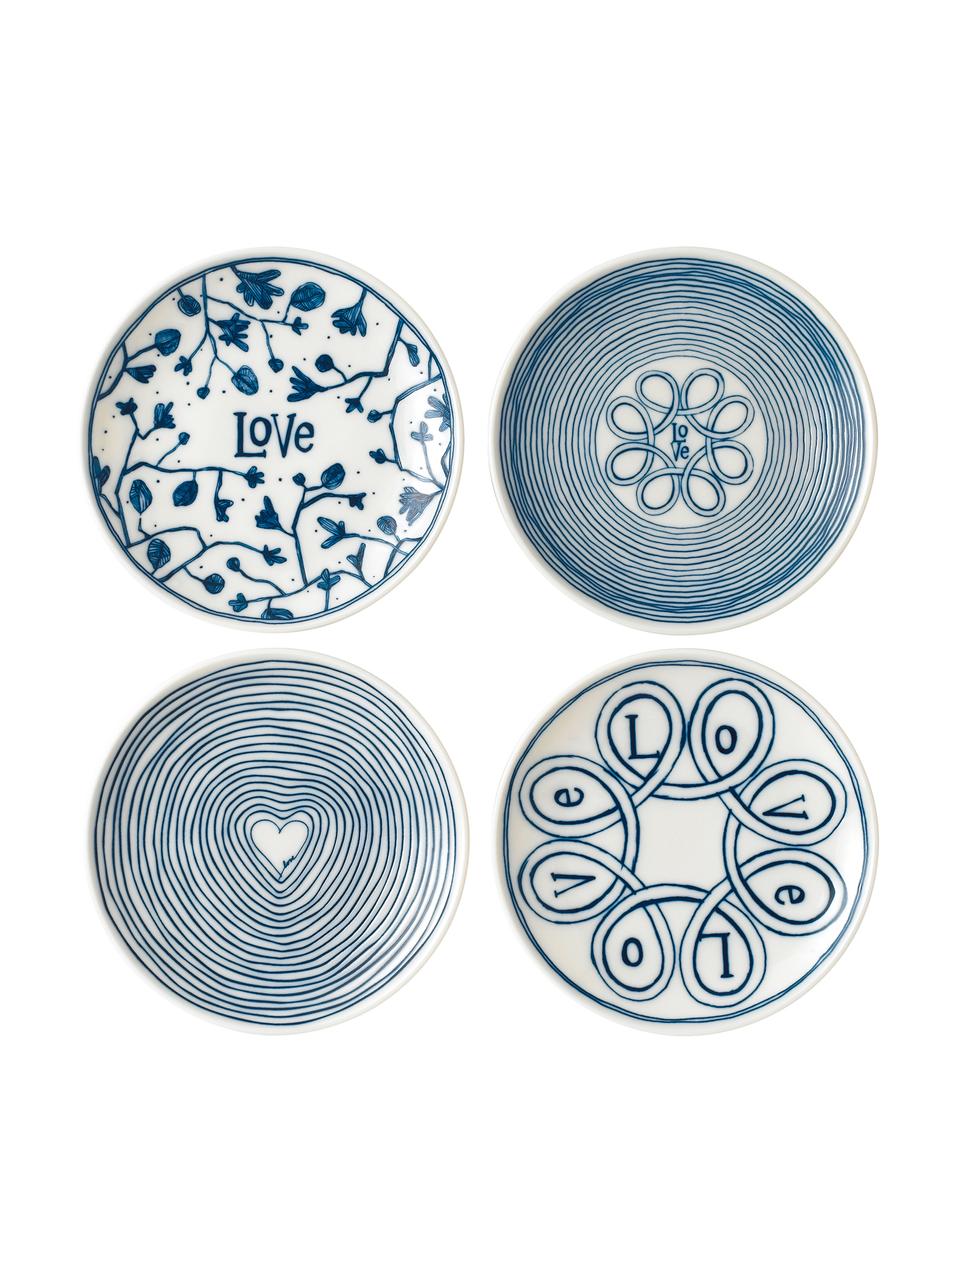 Ontbijtbordenset Love in wit/blauw met patroon, 4-delig, Porselein, Ivoorkleurig, kobaltblauw, Ø 16 cm